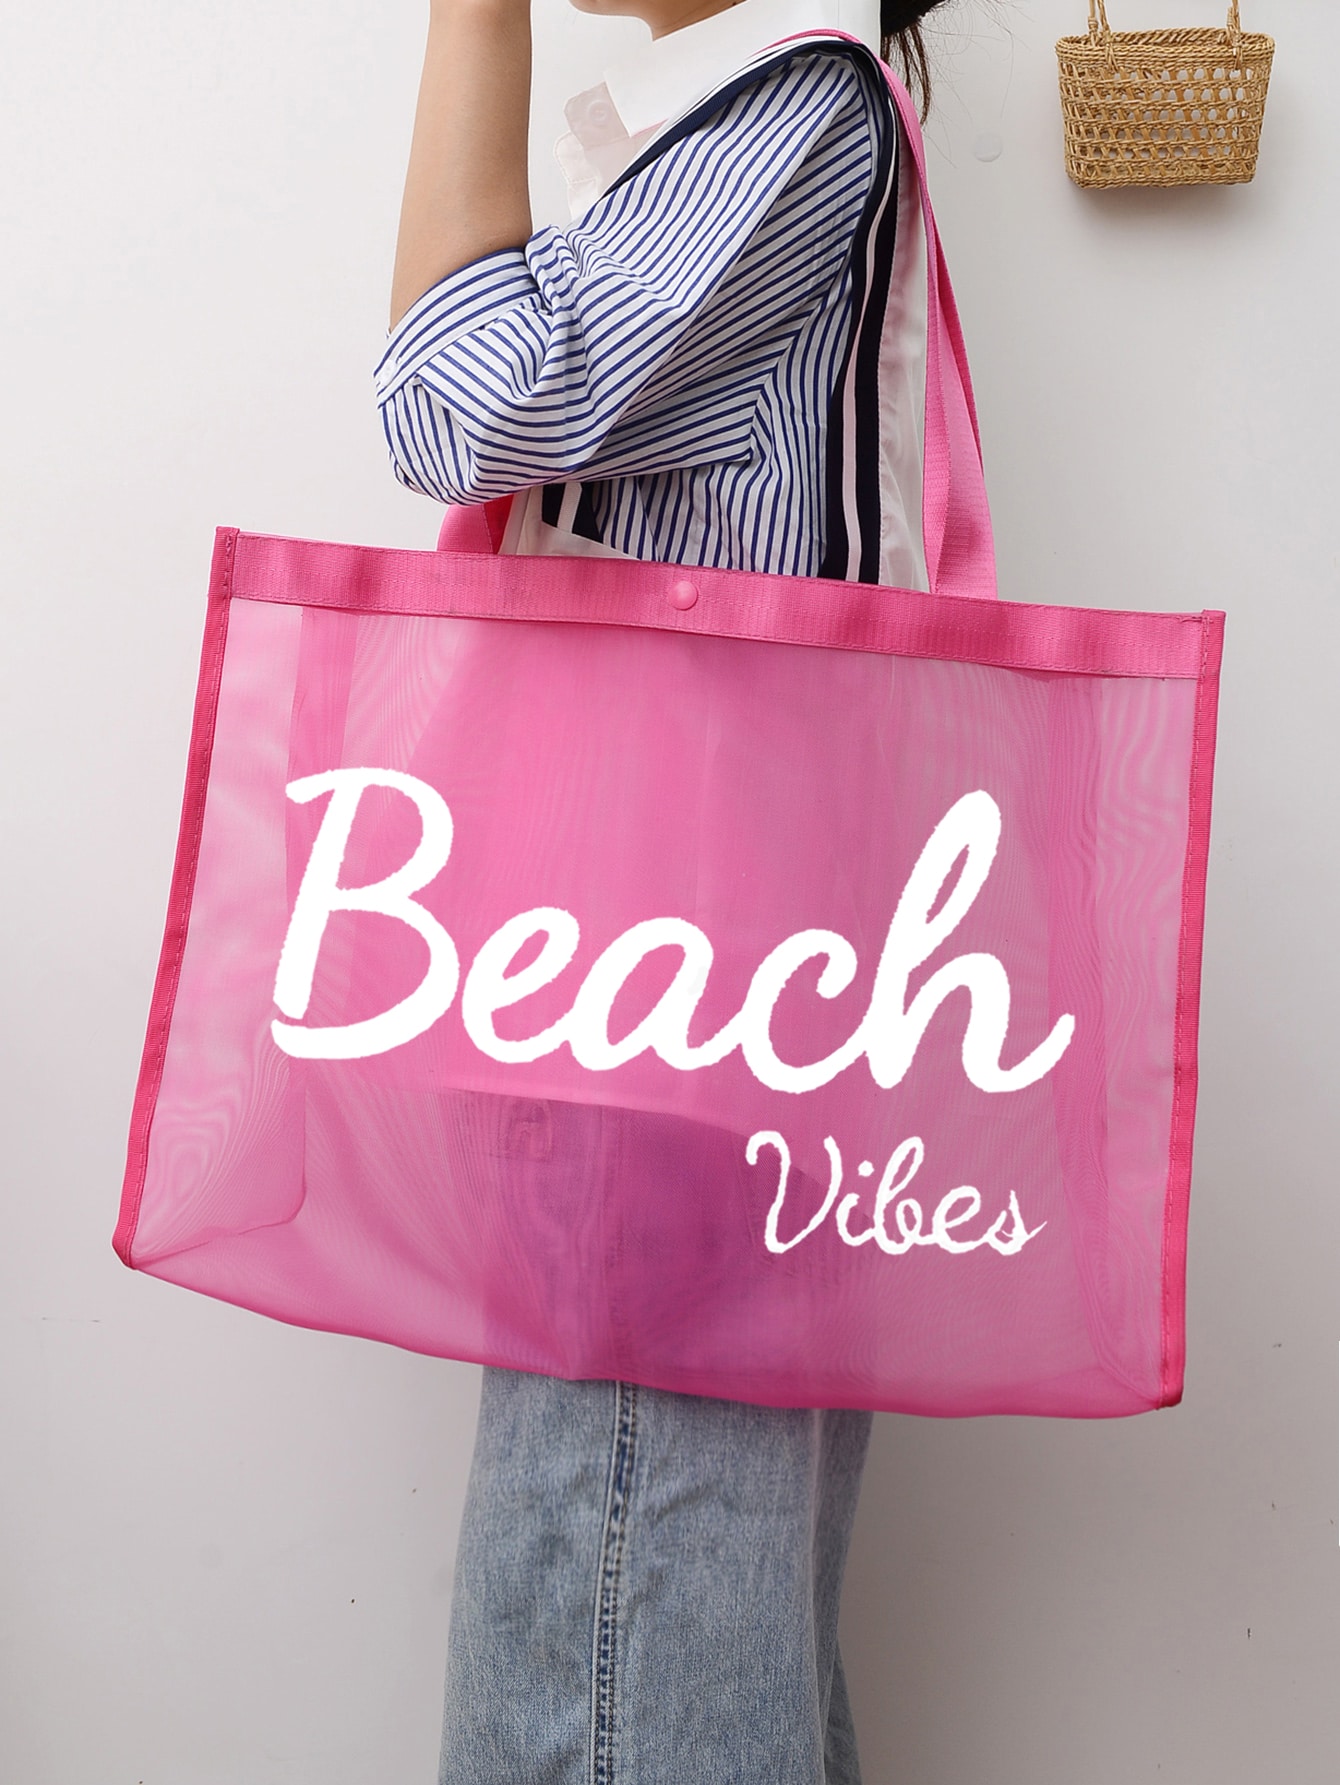 пуховик большой емкости для отдыха бежевый Портативная большая сумка для пляжного отдыха с буквенным принтом большой емкости для девочек-подростков, розовый